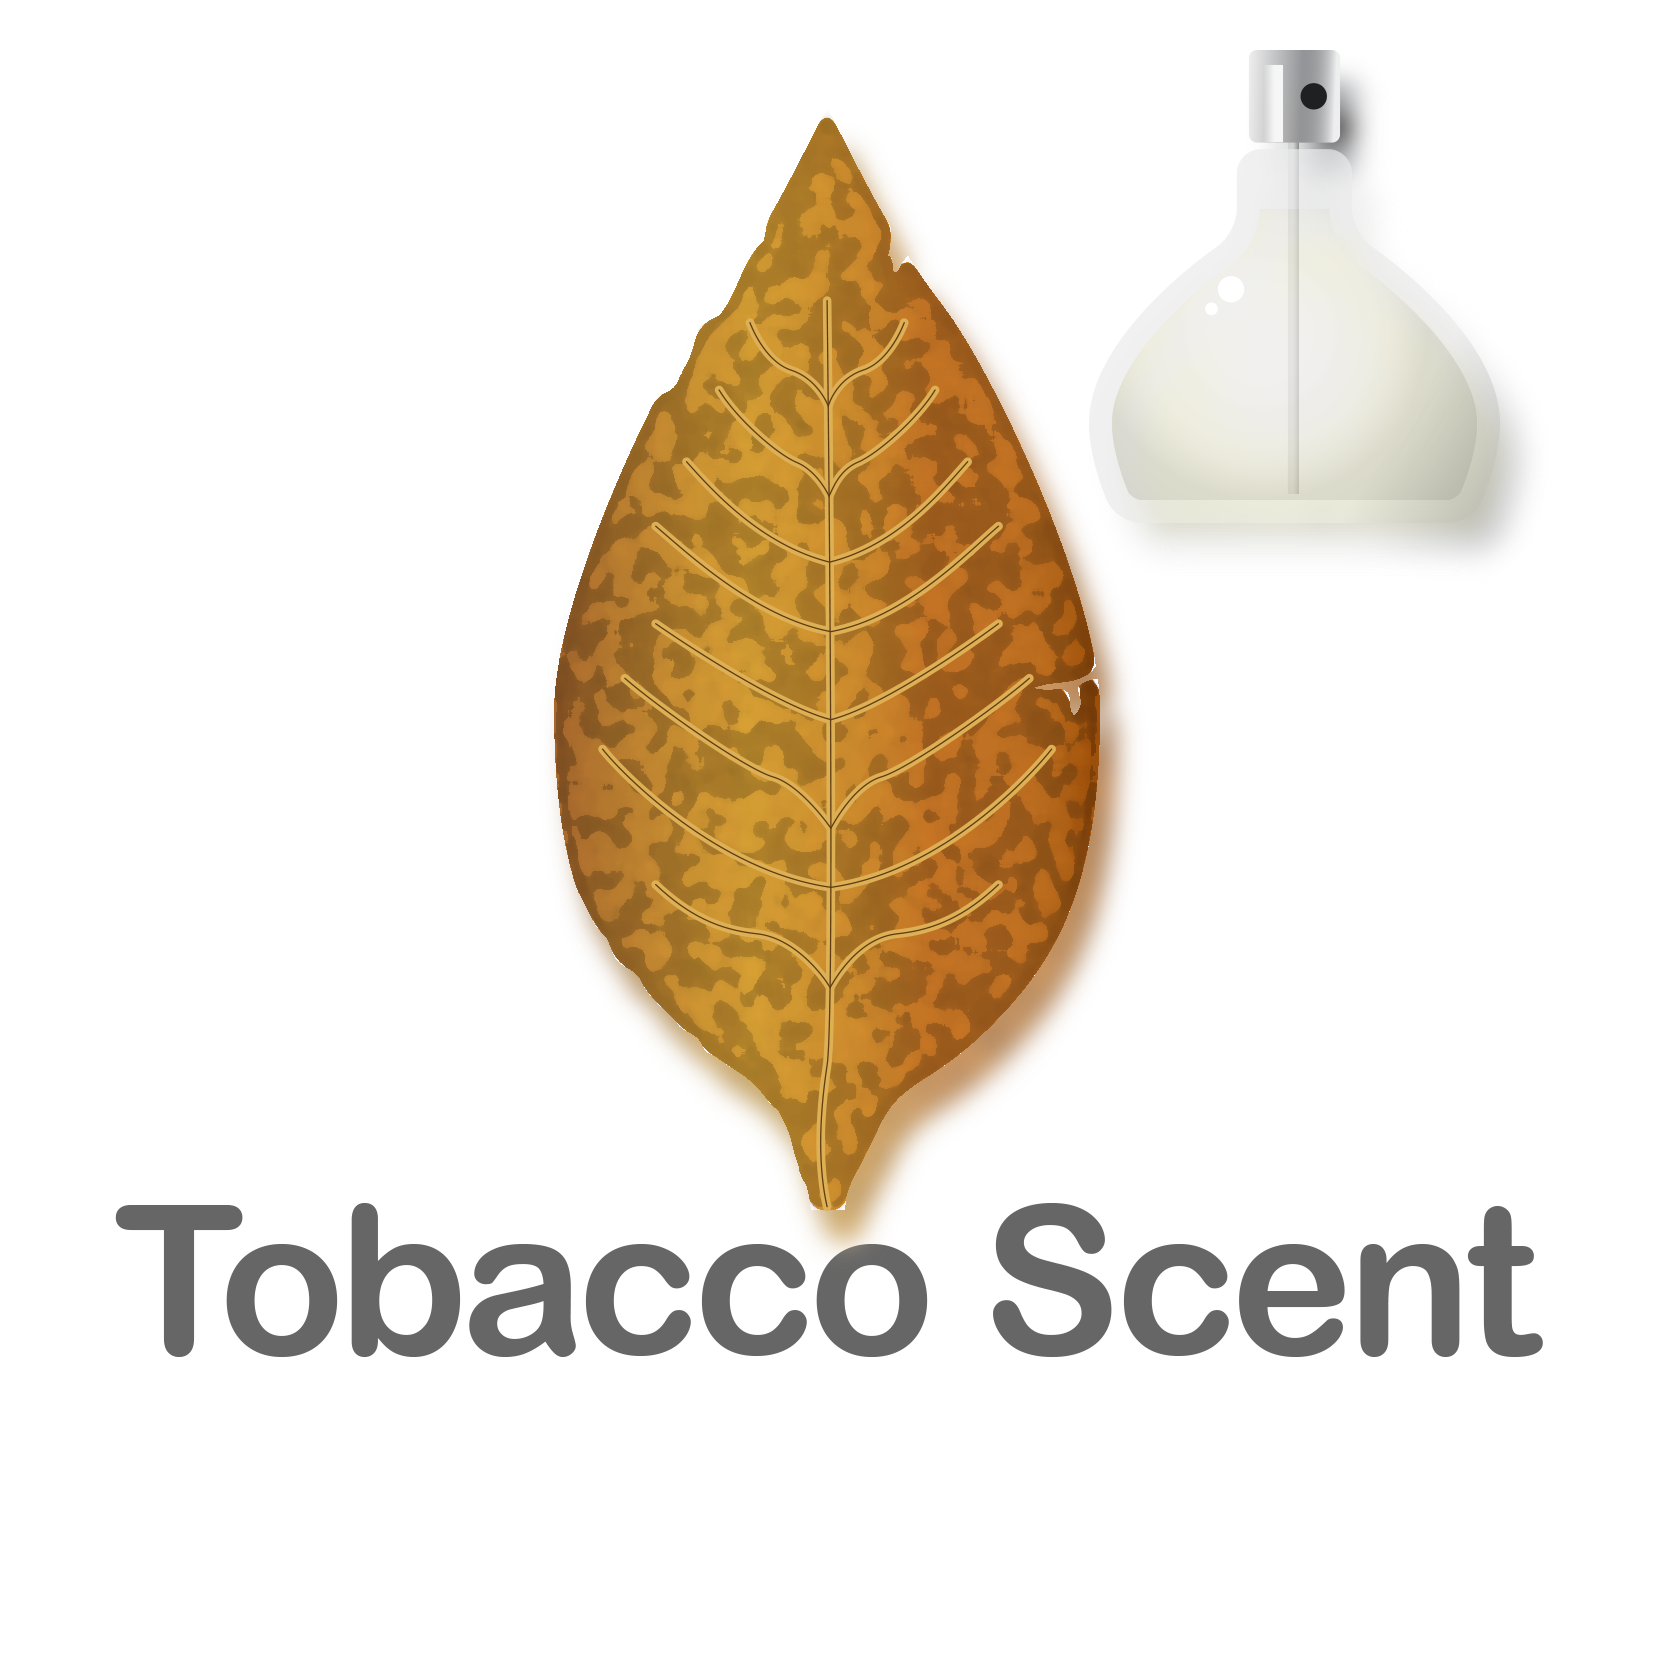 Tobacco Scent